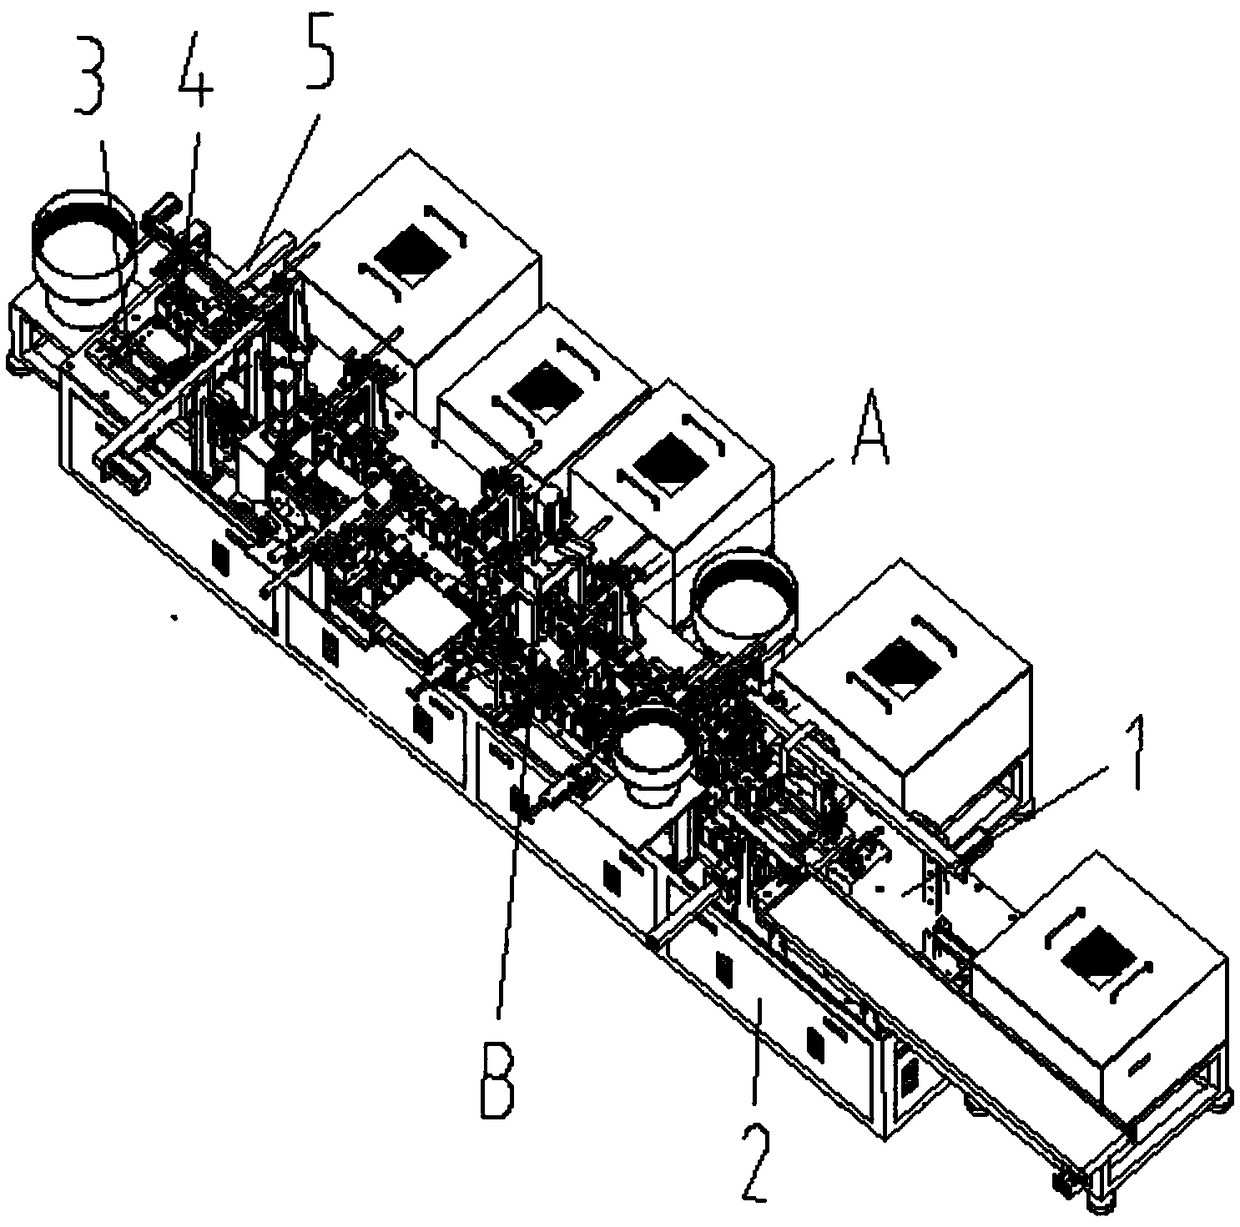 Assembly mechanism of glass bead gear shaft oiler